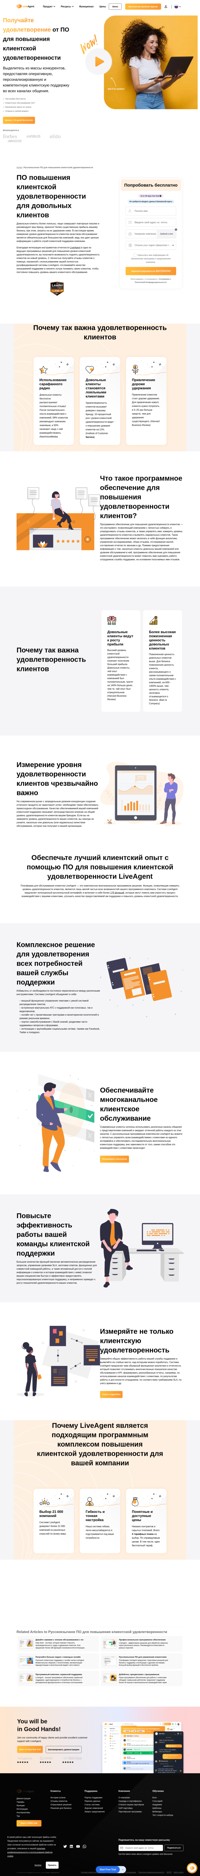 Повышайте уровень удовлетворенности своих клиентов, с помощью российской системы LiveAgent и встроенного в нее программного средства Nicereply для измерения клиентской удовлетворенности.